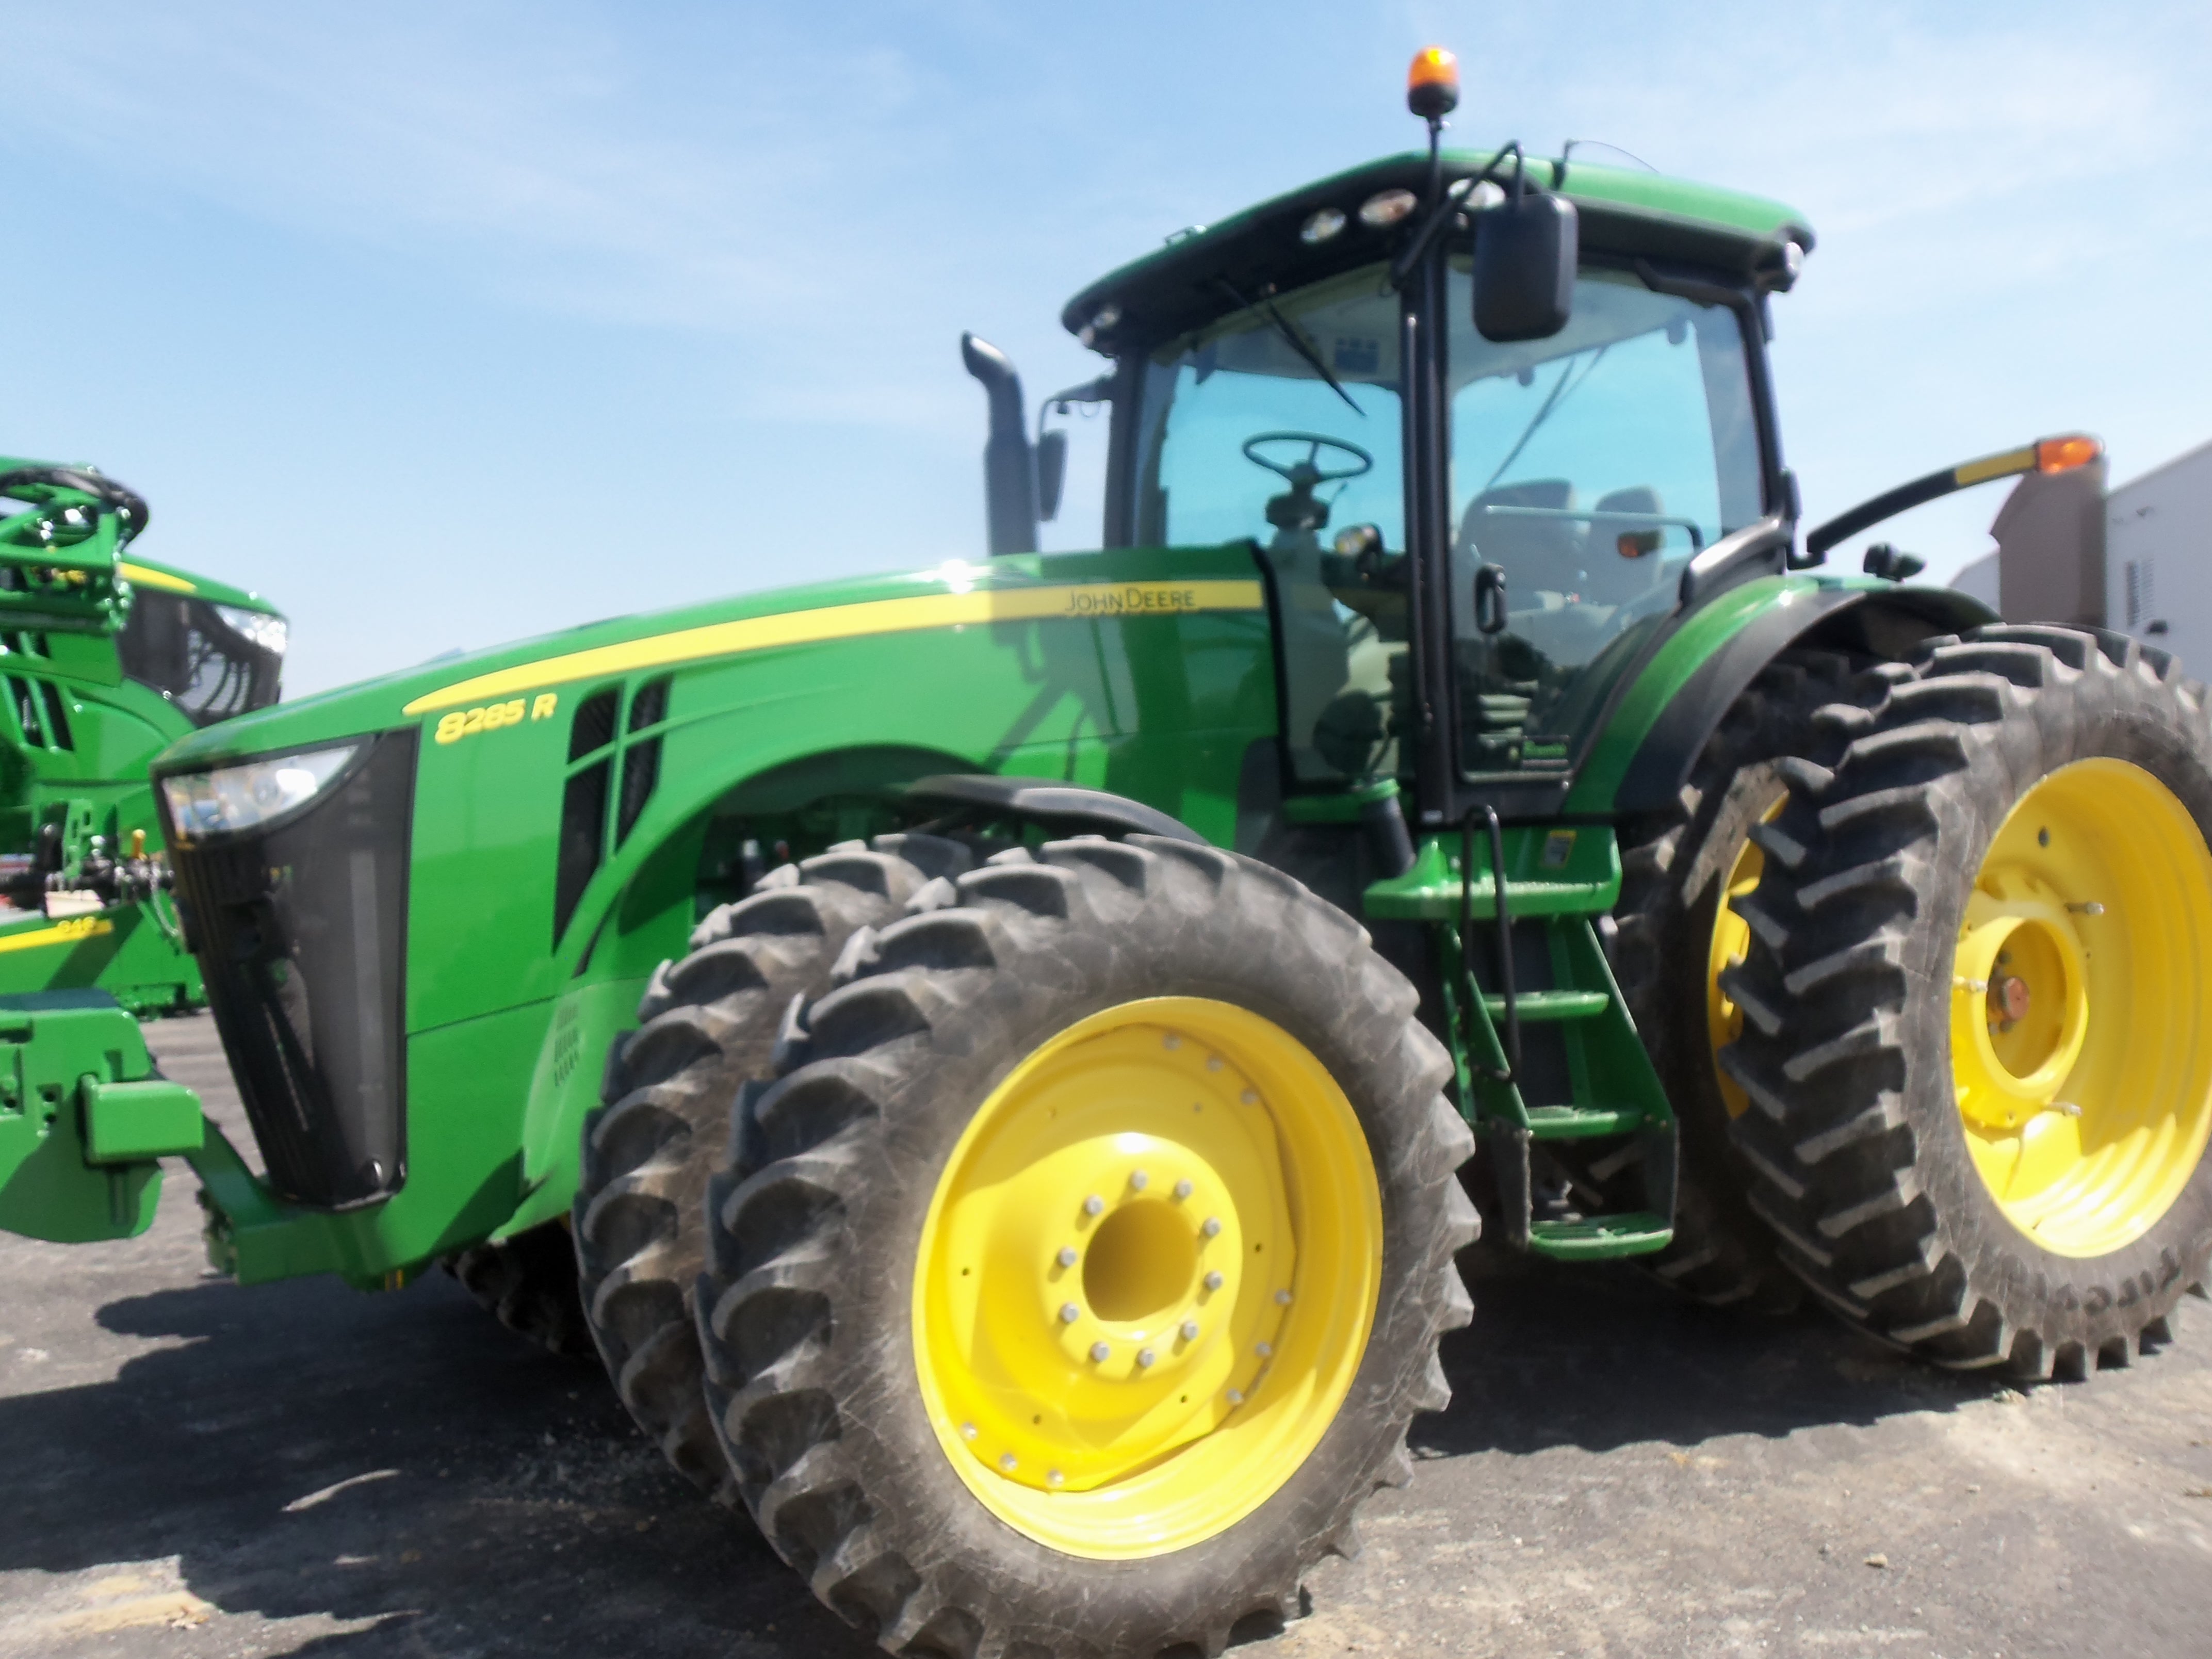 John Deere 8285R row crop tractor. | John Deere equipment | Pinterest